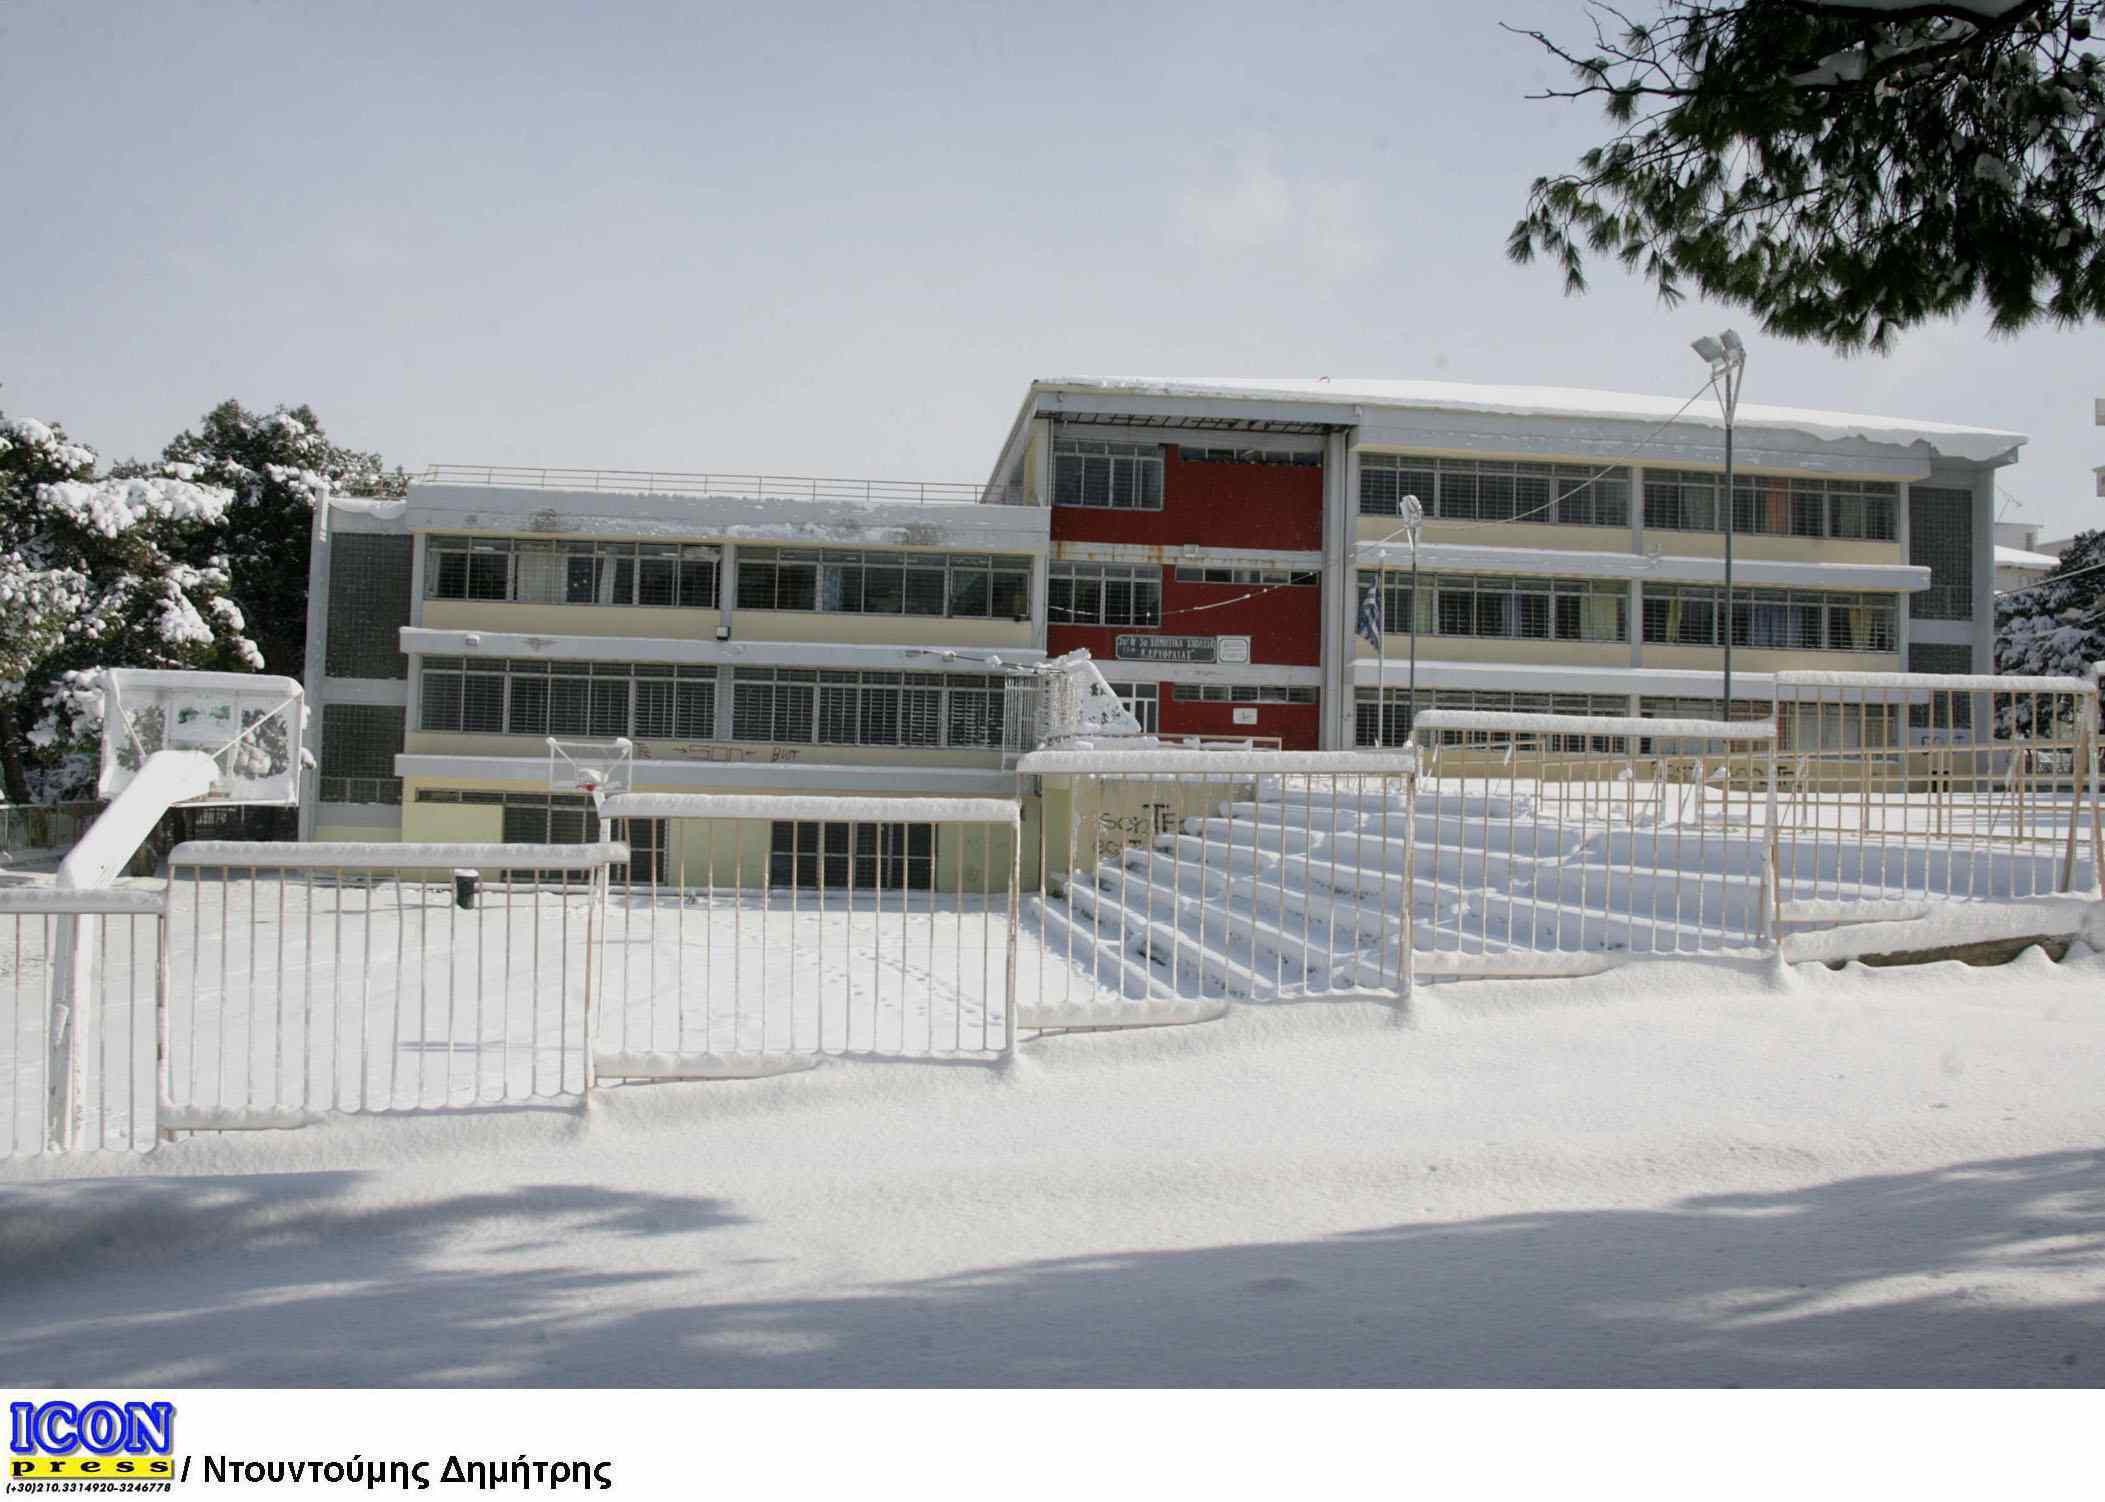 Ηράκλειο: Κλειστά τα σχολεία λόγω κακοκαιρίας